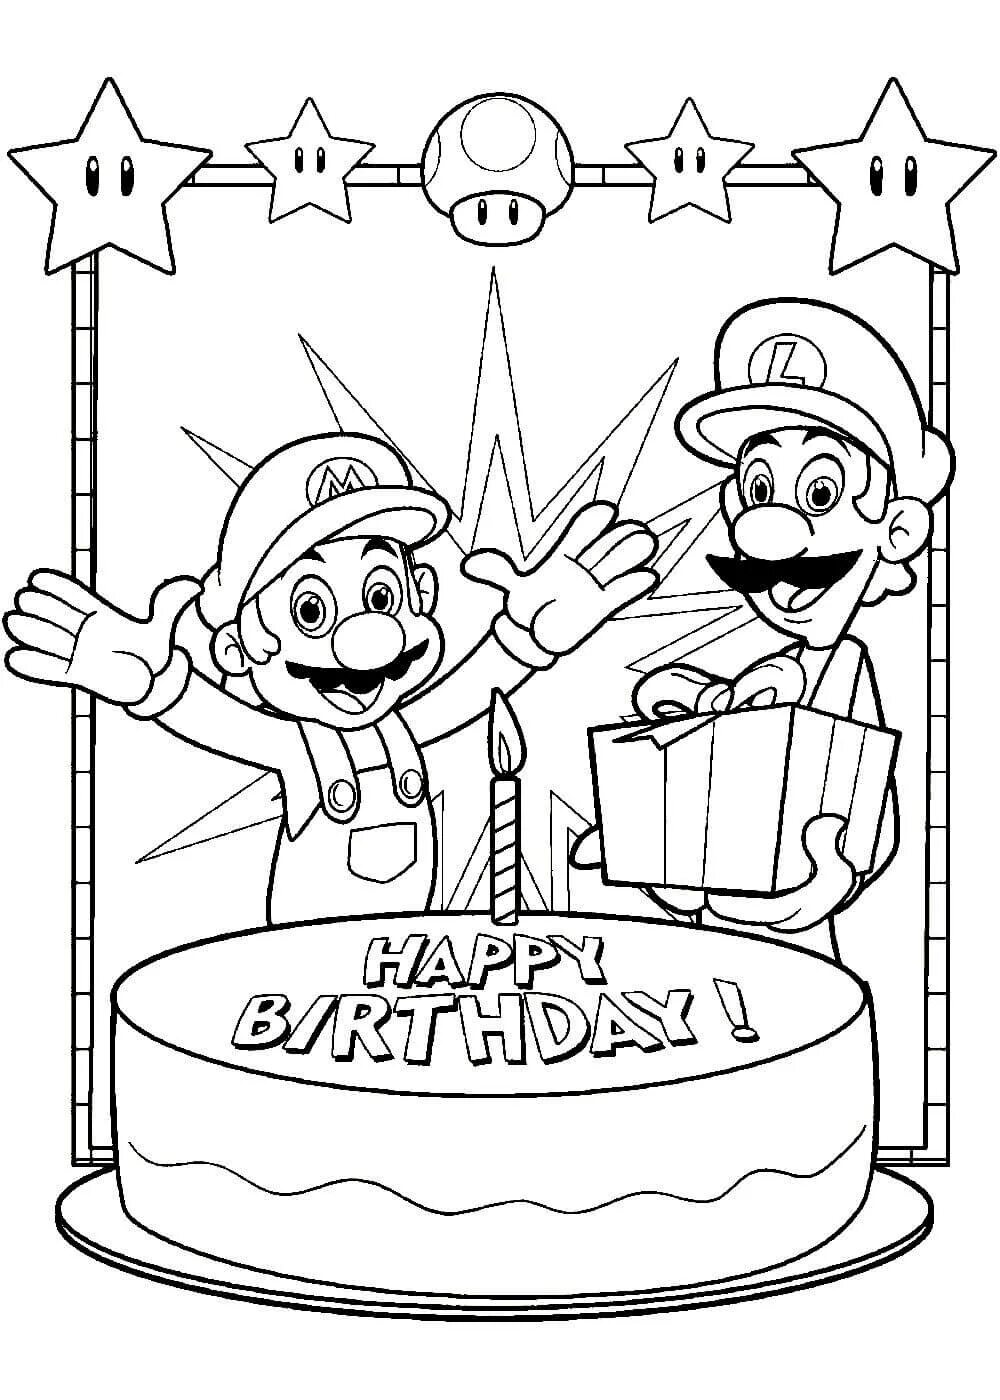 Поздравления с днем раскраска. Раскраска "с днем рождения!". РАСКРАСКАОТКРЫТКИ С днём рождения. Марио раскраска. Раскраска с днем рождения для мальчика.